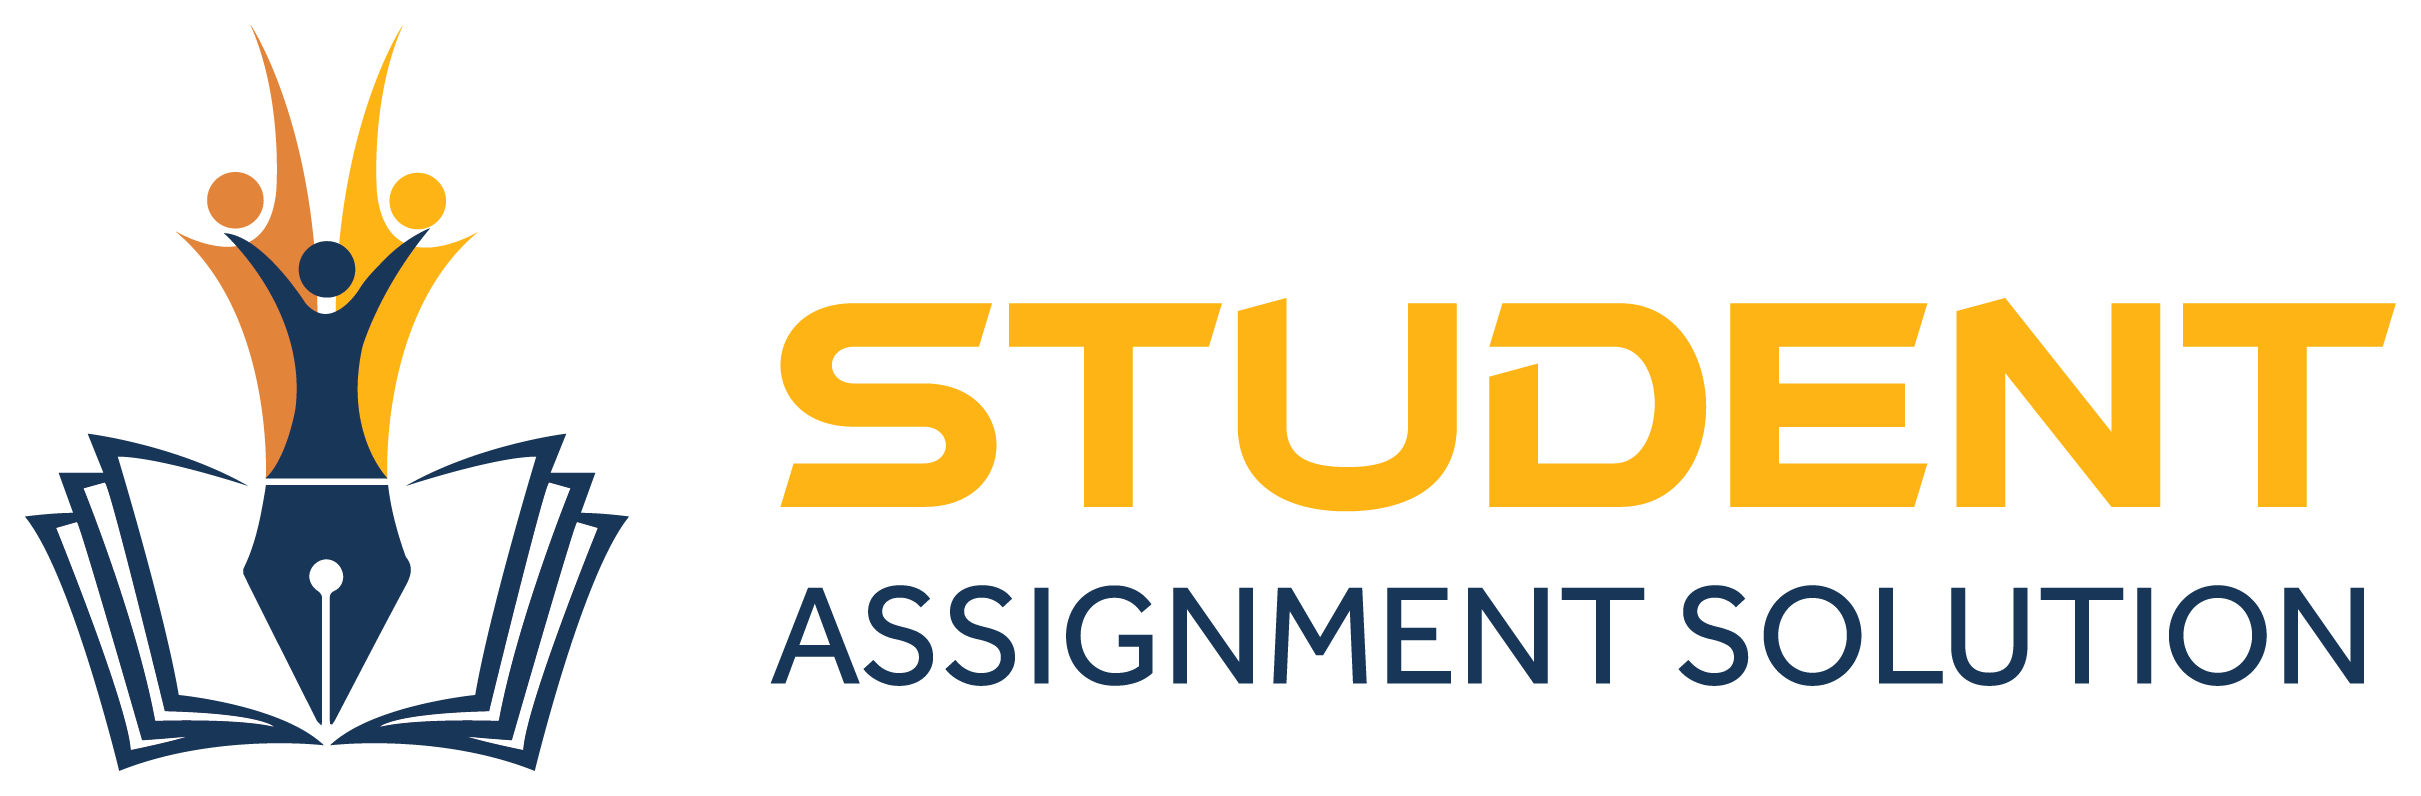 computer assignment logo